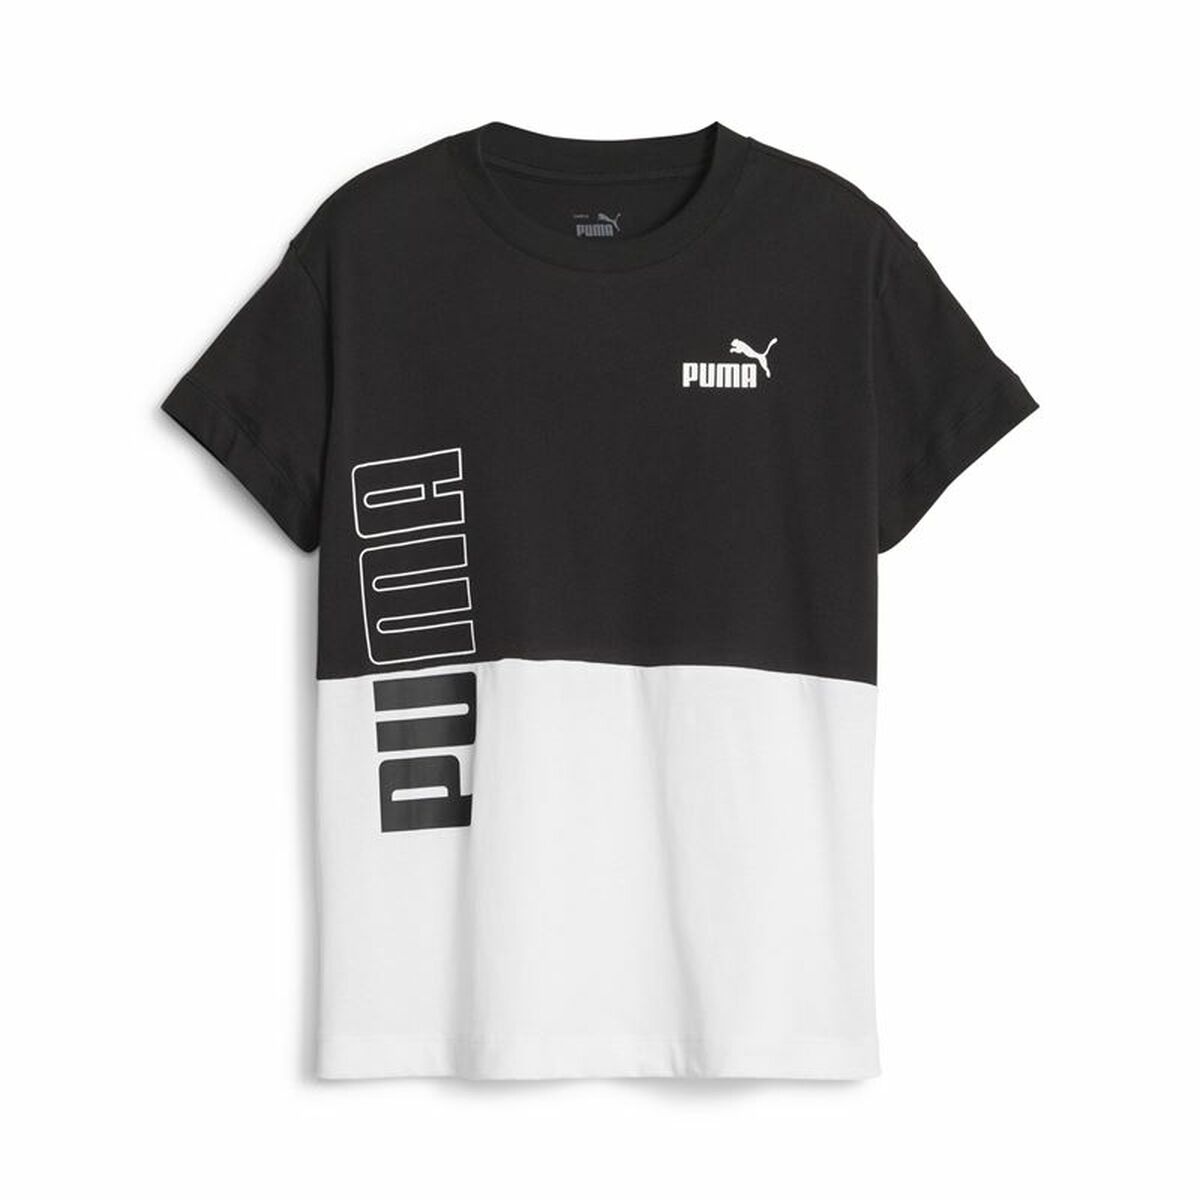 Kurzarm-T-Shirt für Kinder Puma Power Colorblock Weiß Schwarz